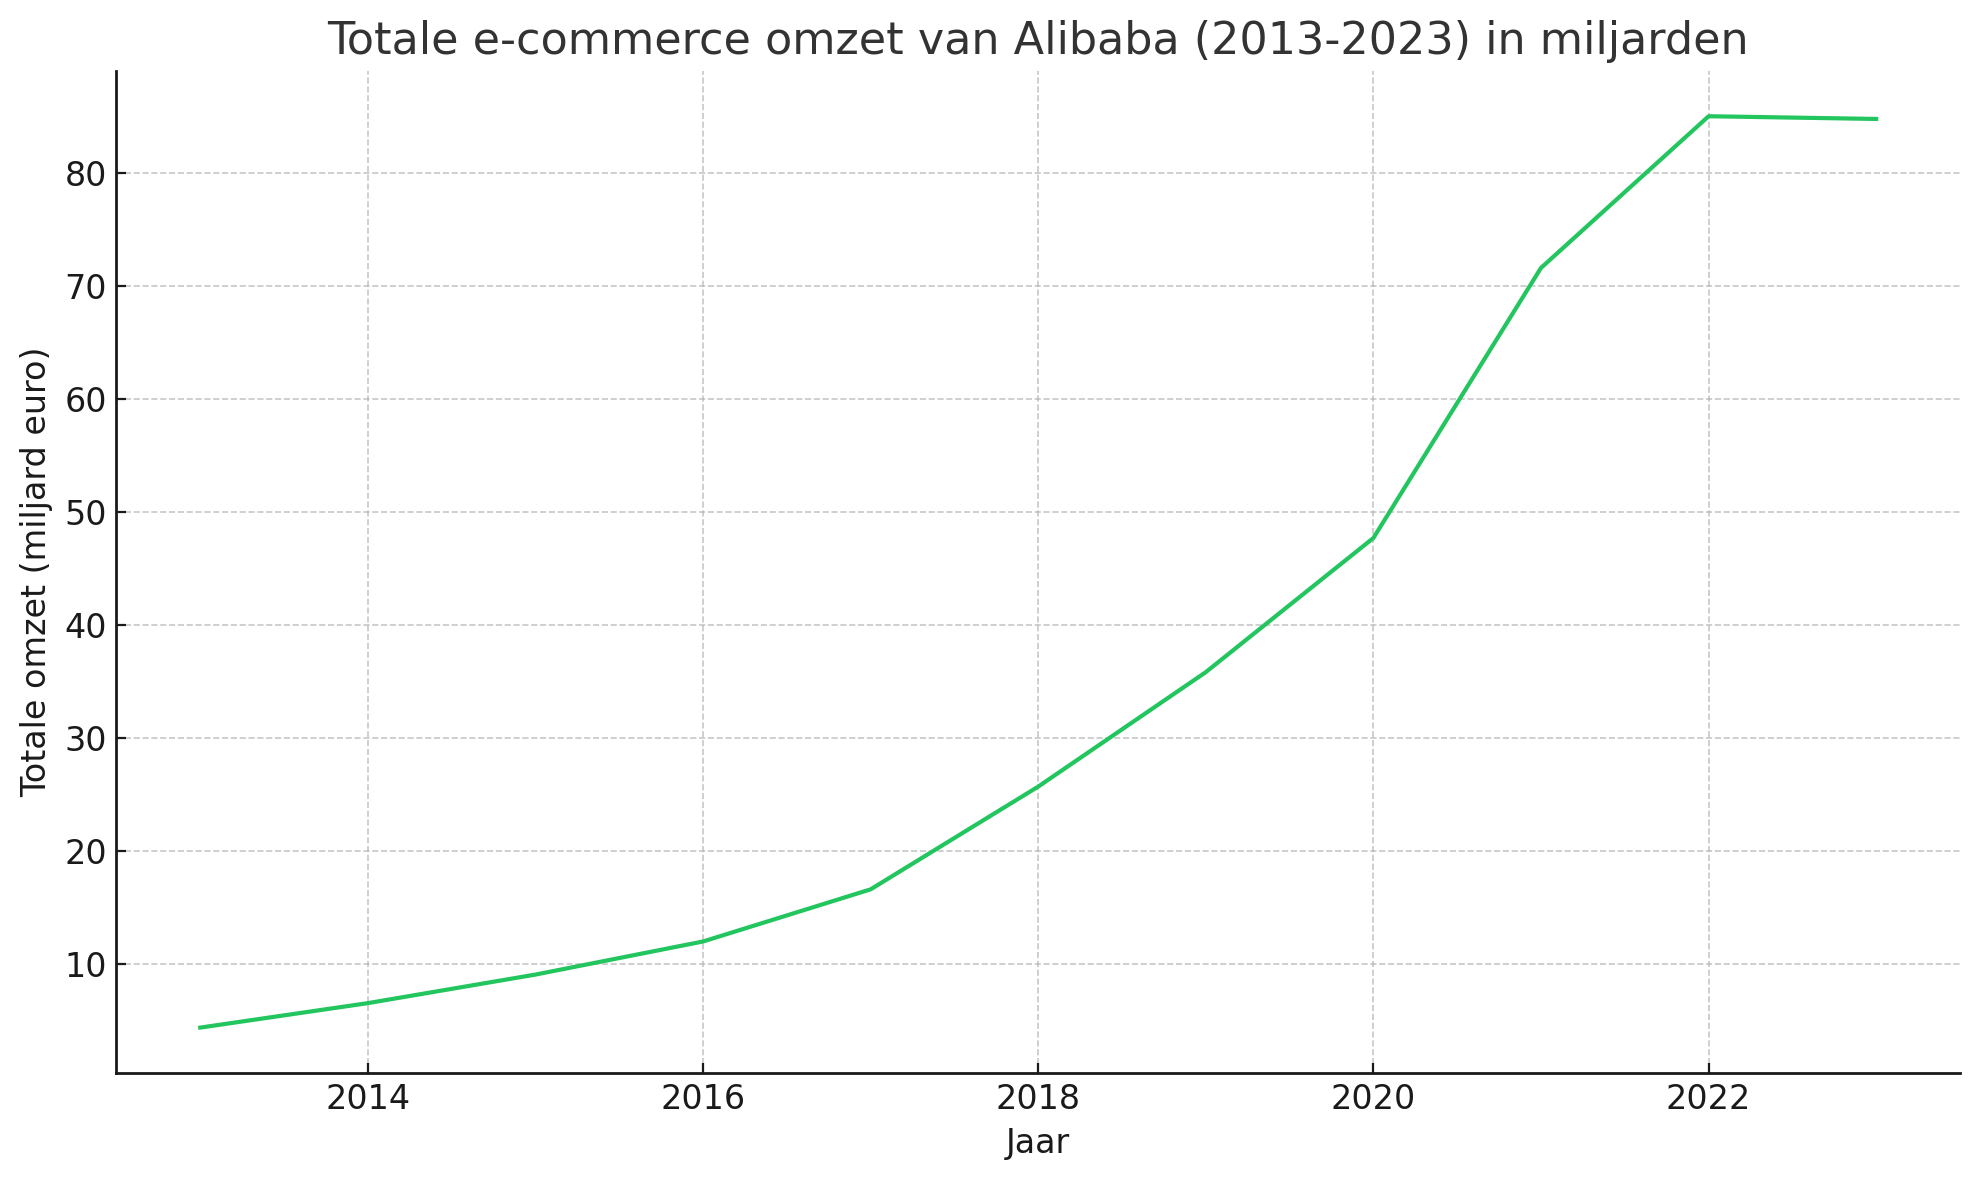 Totale e-commerce omzet van Alibaba in miljarden